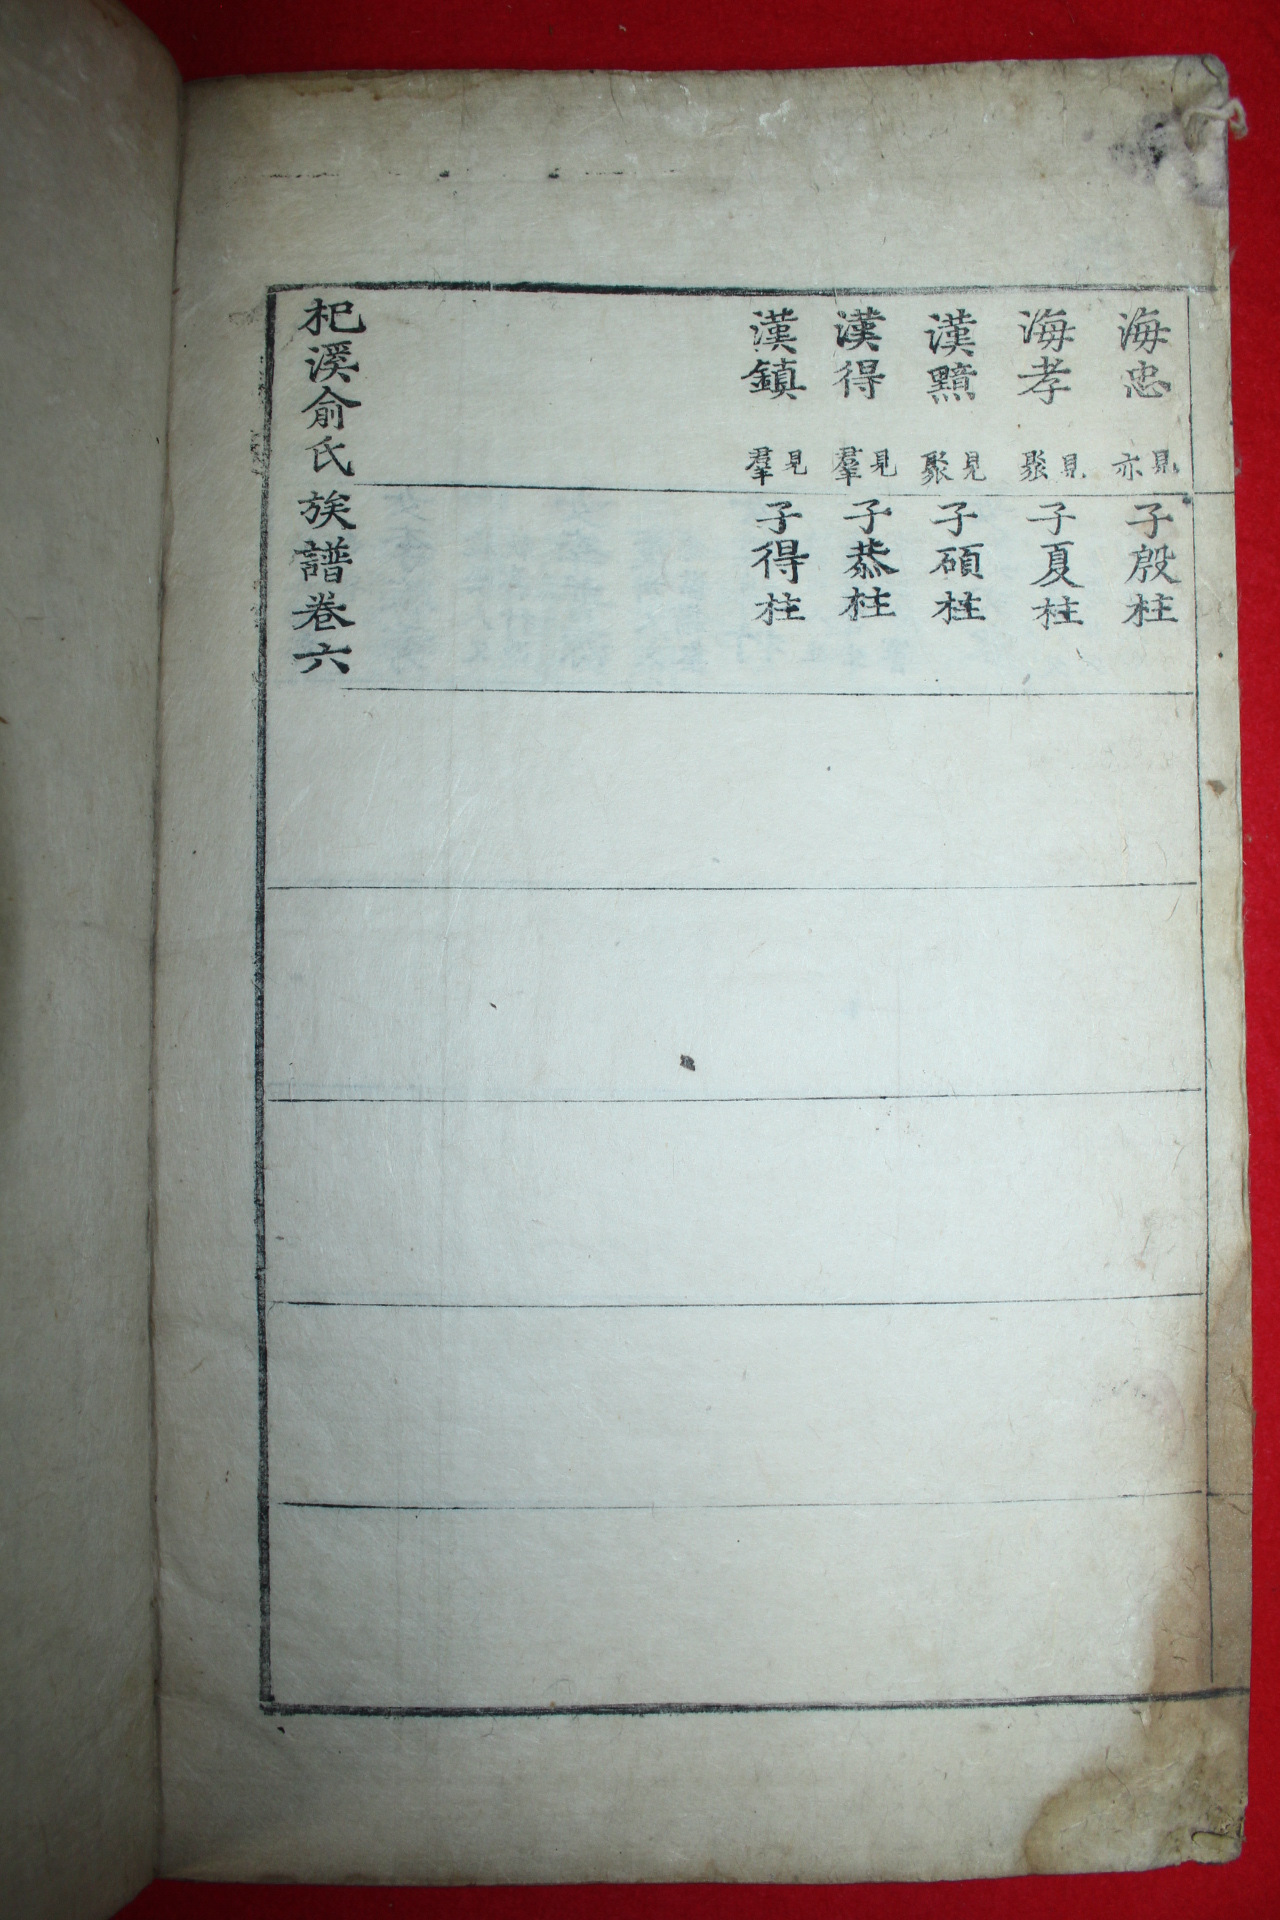 1700년대 목판본 기계유씨족보(杞溪兪氏族譜)단성,충목,자산공파 권3,4,6  2책